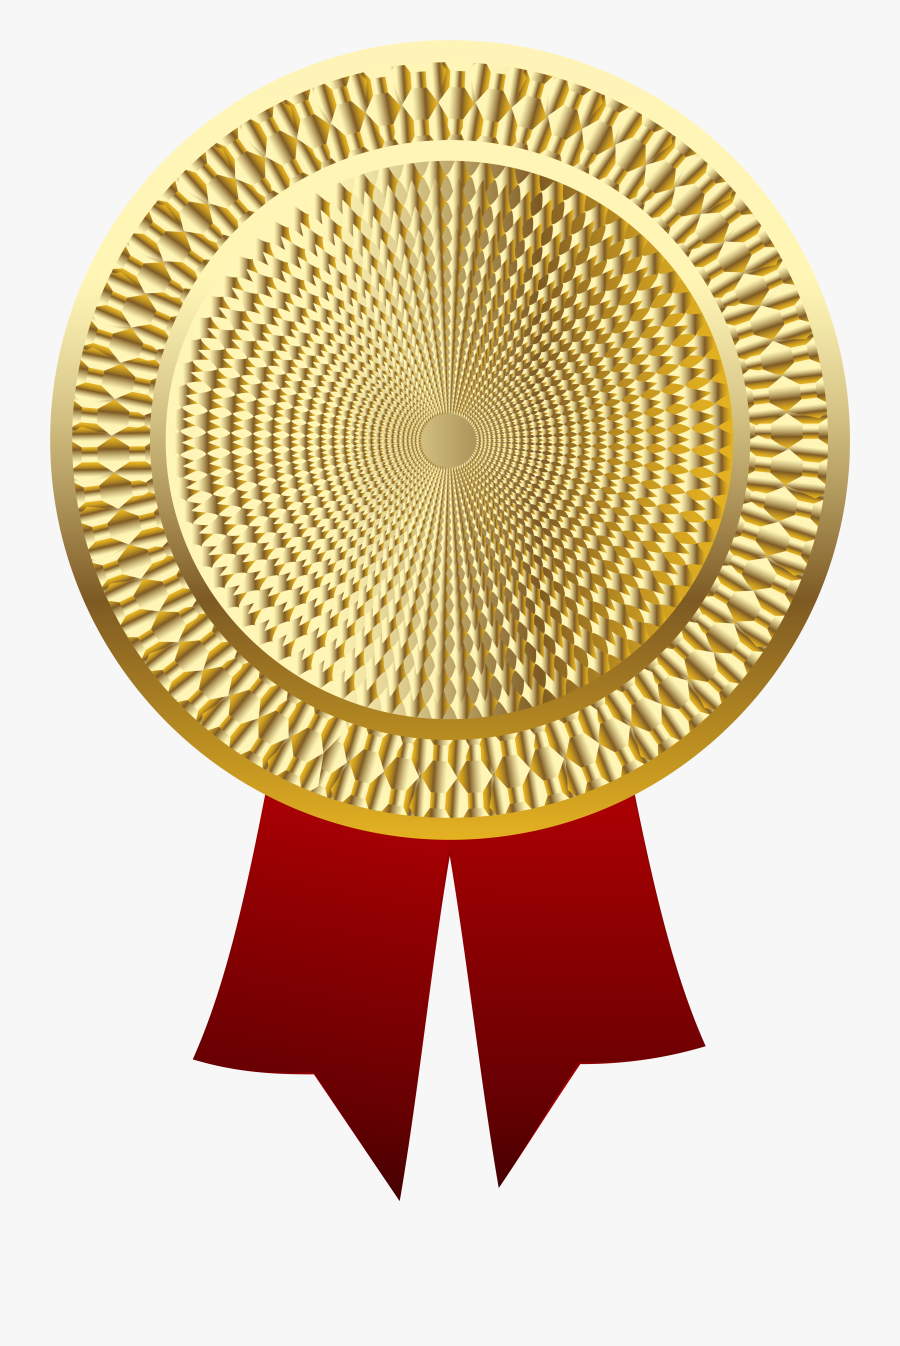 Golden Medal Png Clipart Image - Medal Transparent Background Png, Transparent Clipart